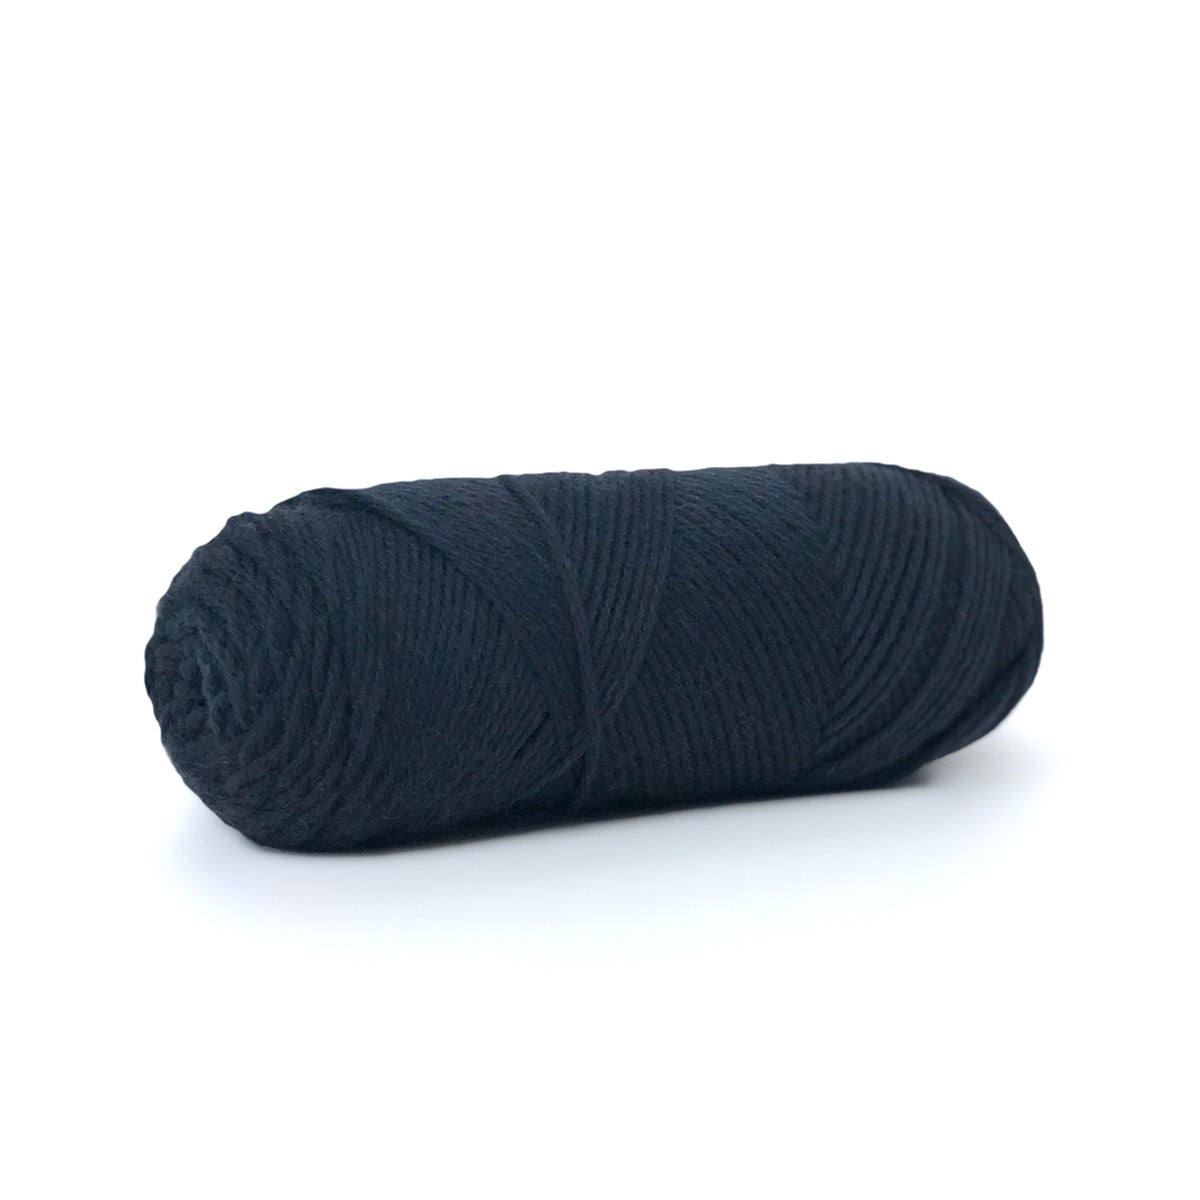 Sille Slipover Kit, Size 2-5 (Black)